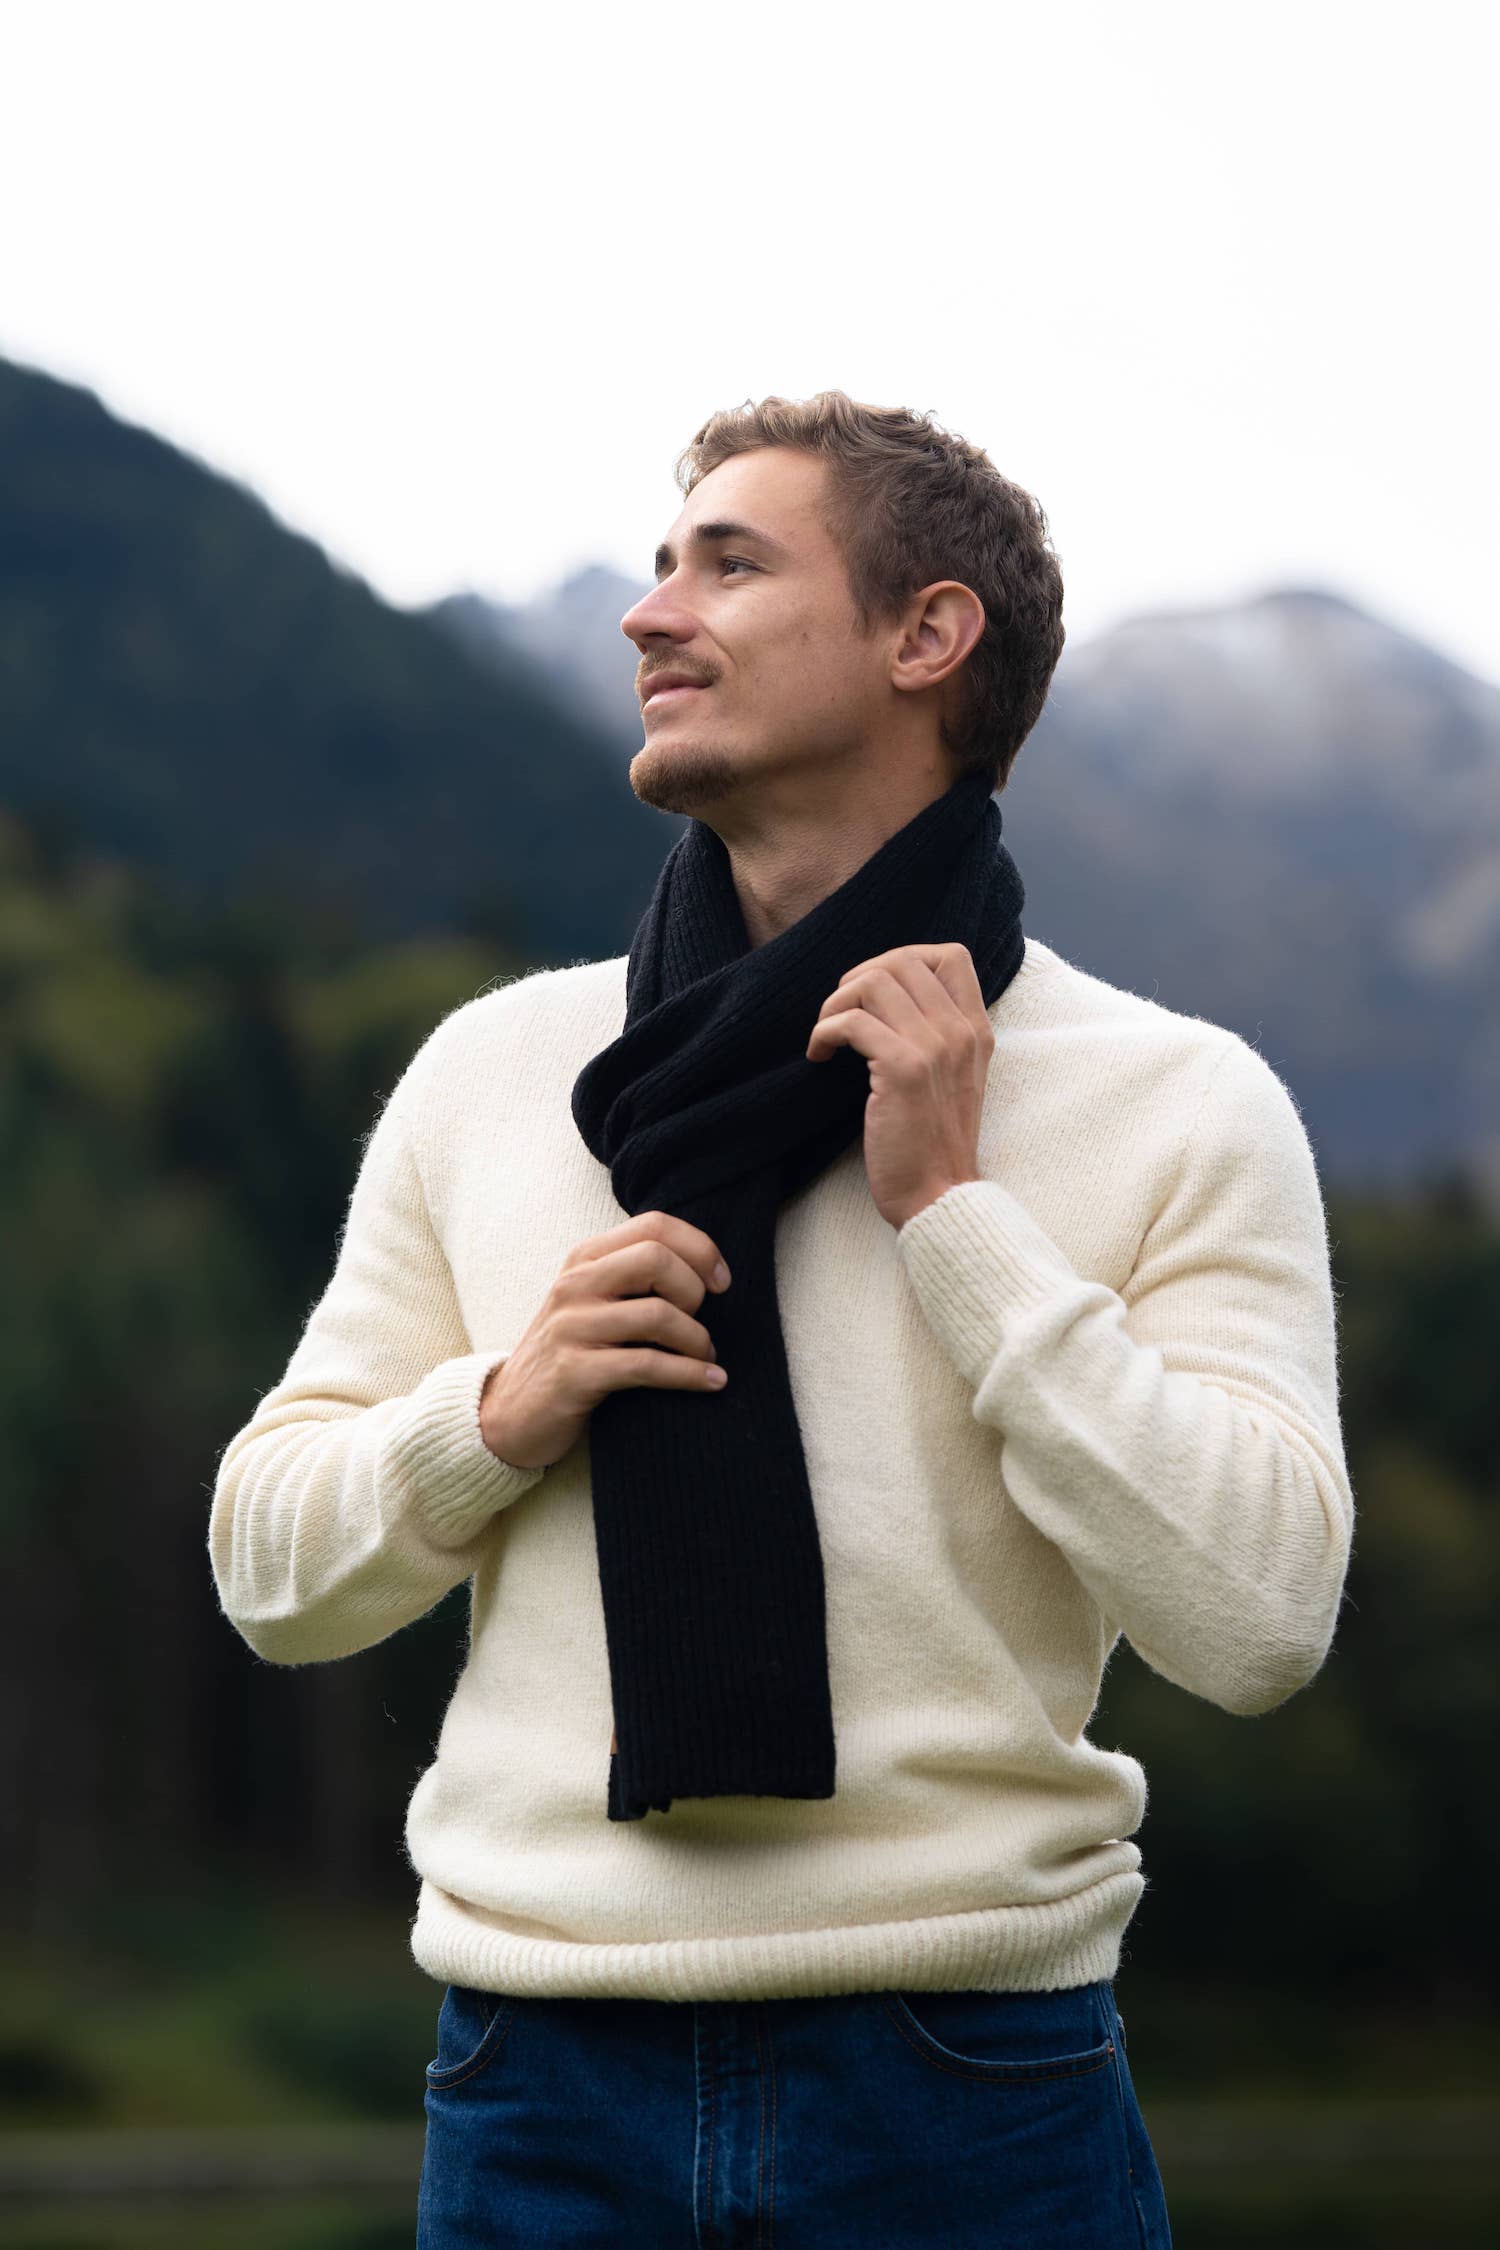 Adoptez notre écharpe noire en laine et cachemire et affichez confort et  style cet style.